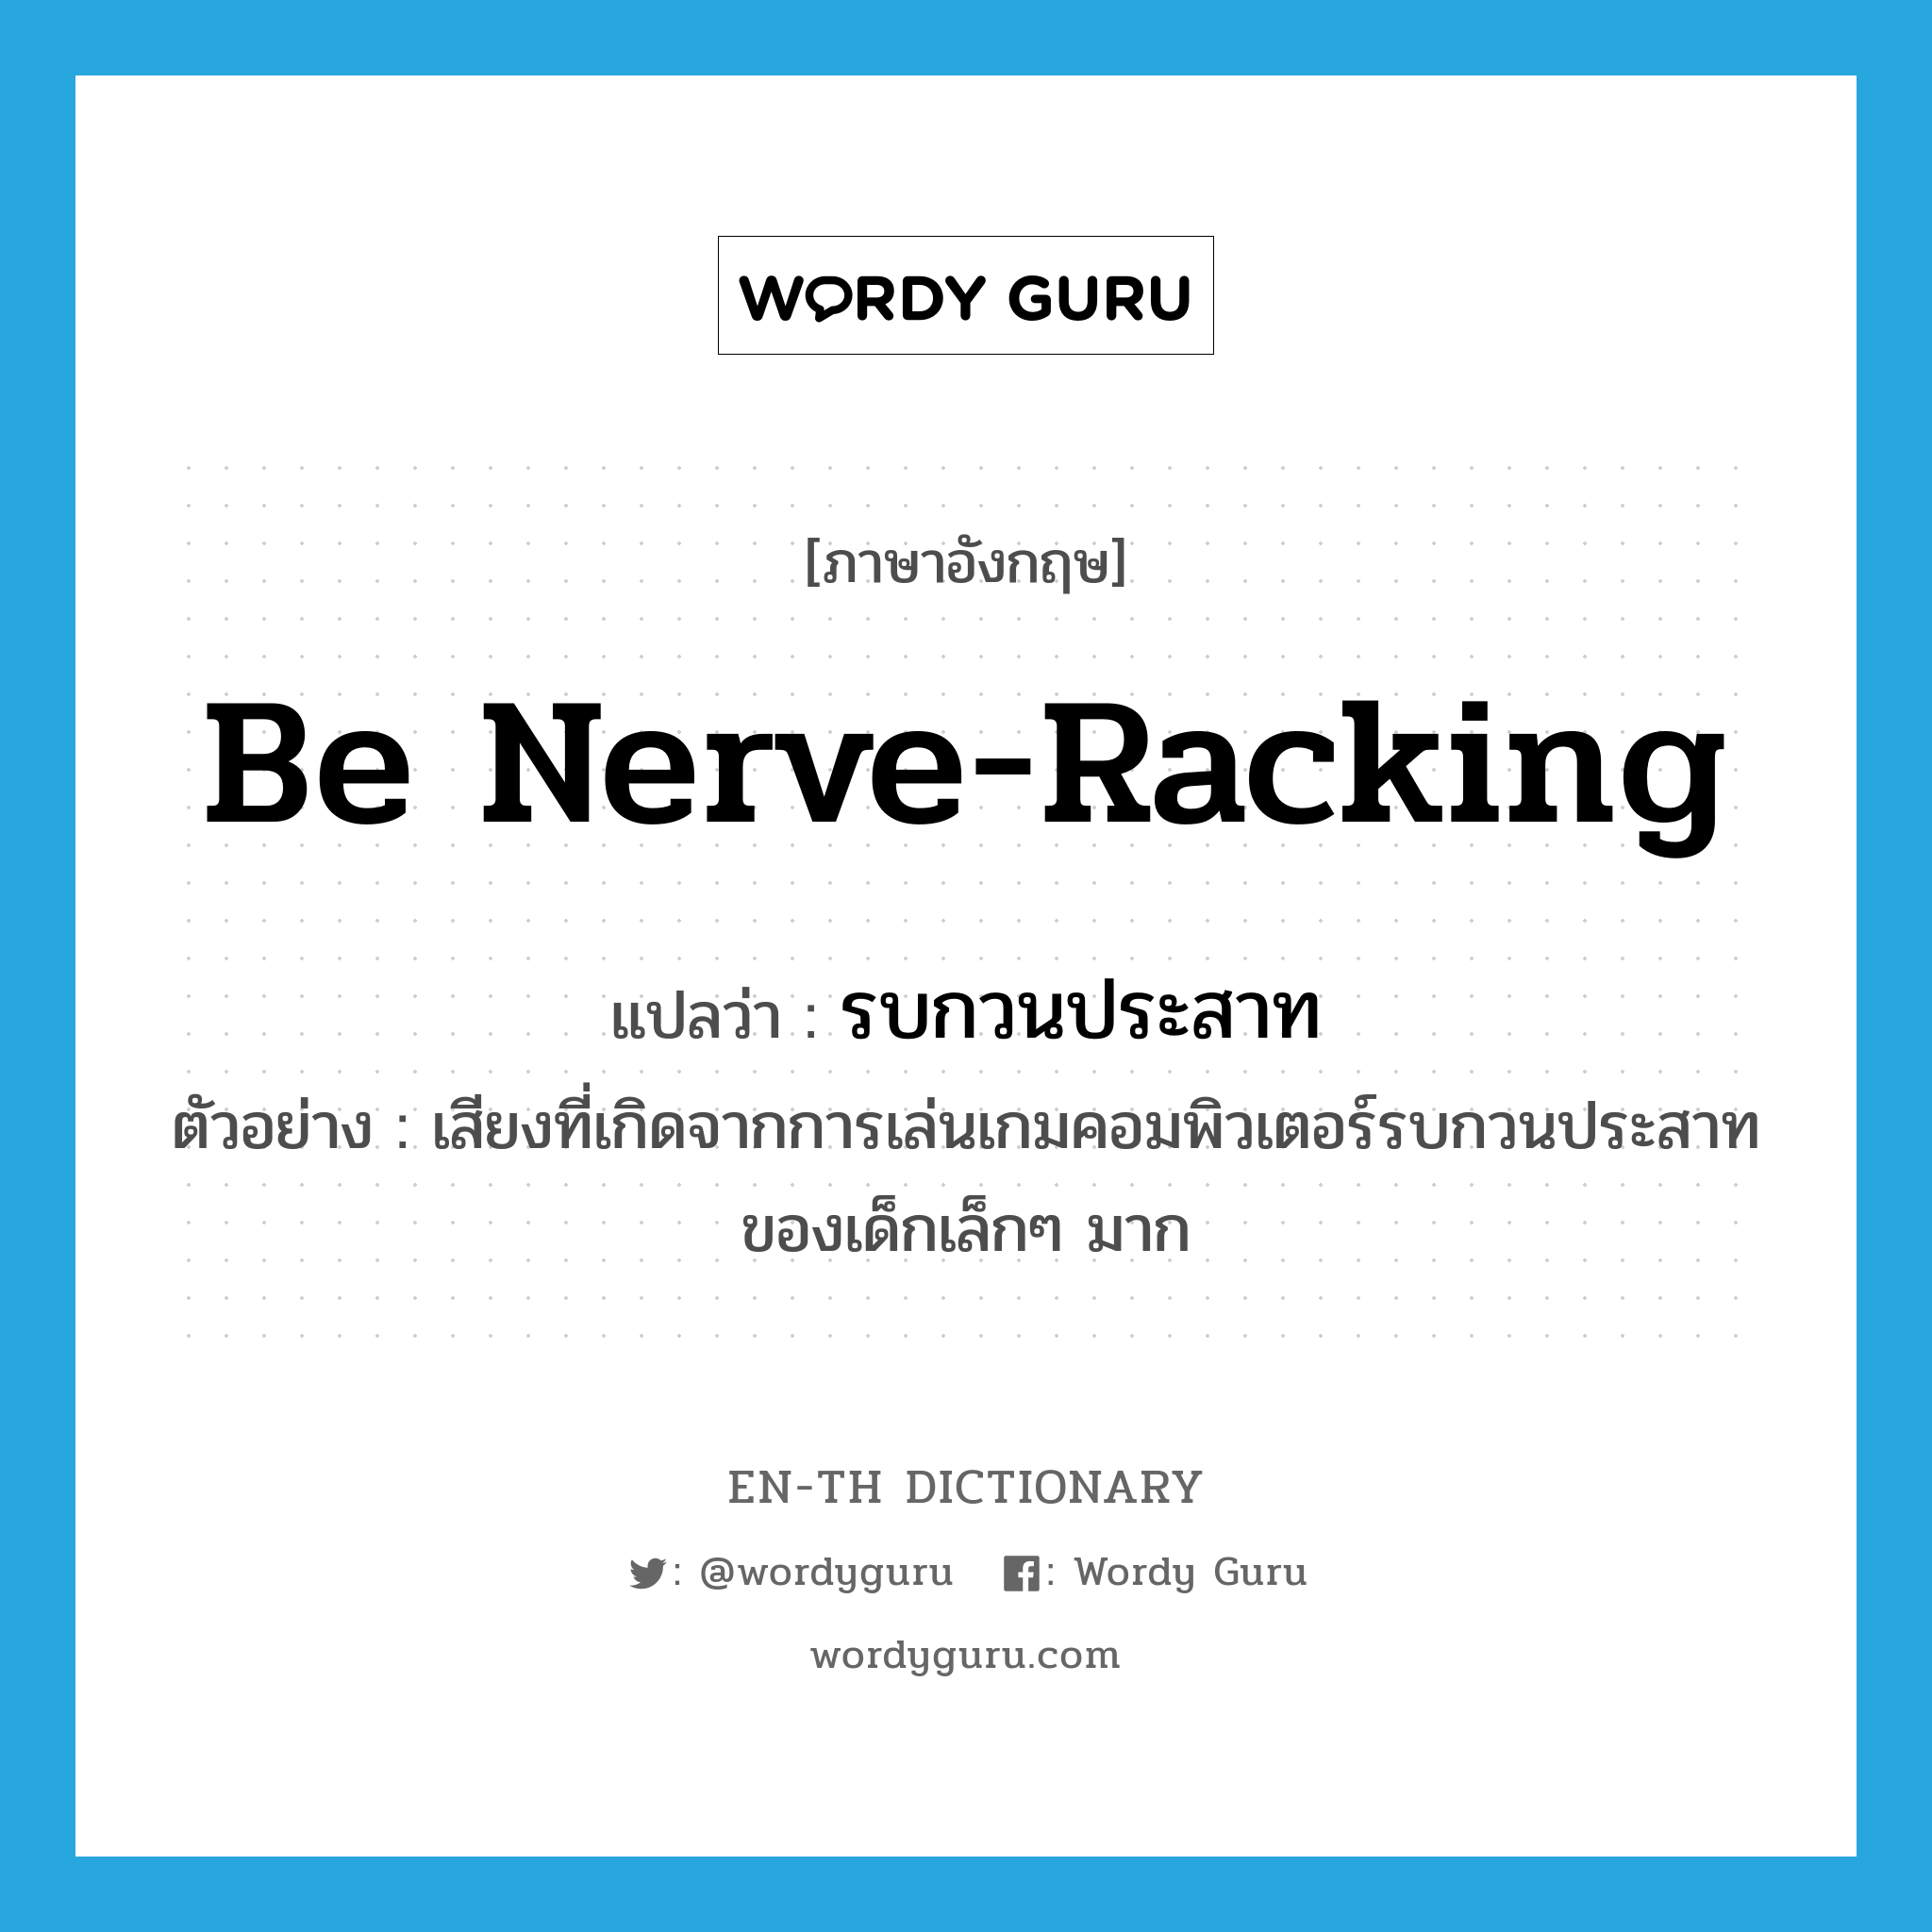 be nerve-racking แปลว่า?, คำศัพท์ภาษาอังกฤษ be nerve-racking แปลว่า รบกวนประสาท ประเภท V ตัวอย่าง เสียงที่เกิดจากการเล่นเกมคอมพิวเตอร์รบกวนประสาทของเด็กเล็กๆ มาก หมวด V